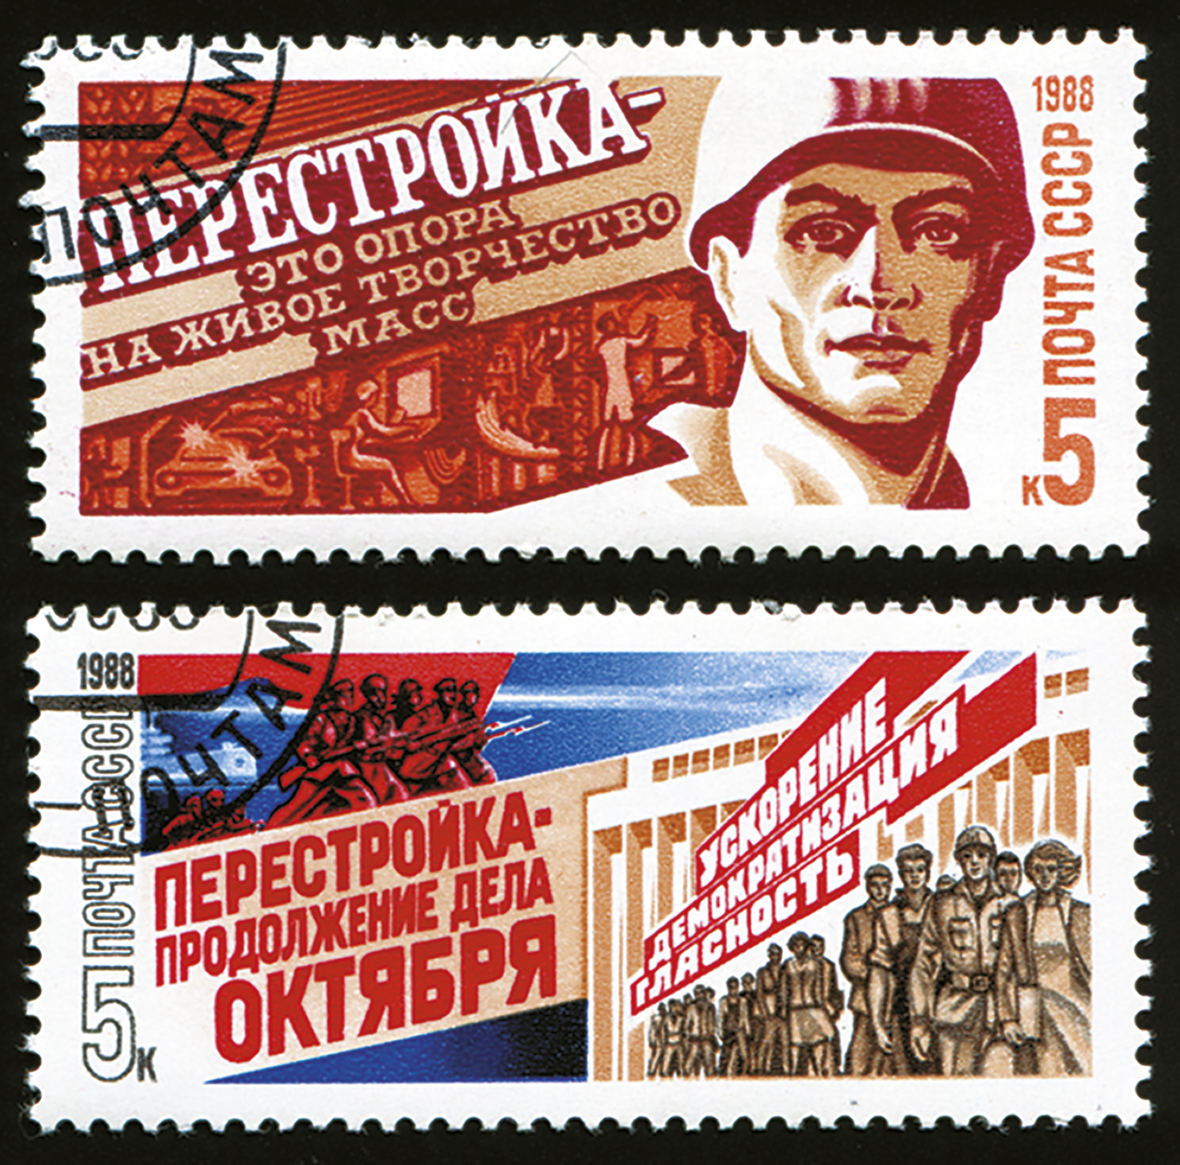 Selo. O primeiro: À esquerda, texto em russo. À direita, ilustração do busto de um soldado. Ao fundo, silhueta de pessoas. O segundo: À esquerda, texto em russo  e ilustração de militares com armas. À direita, ilustração de pessoas em pé na frente de um edifício.